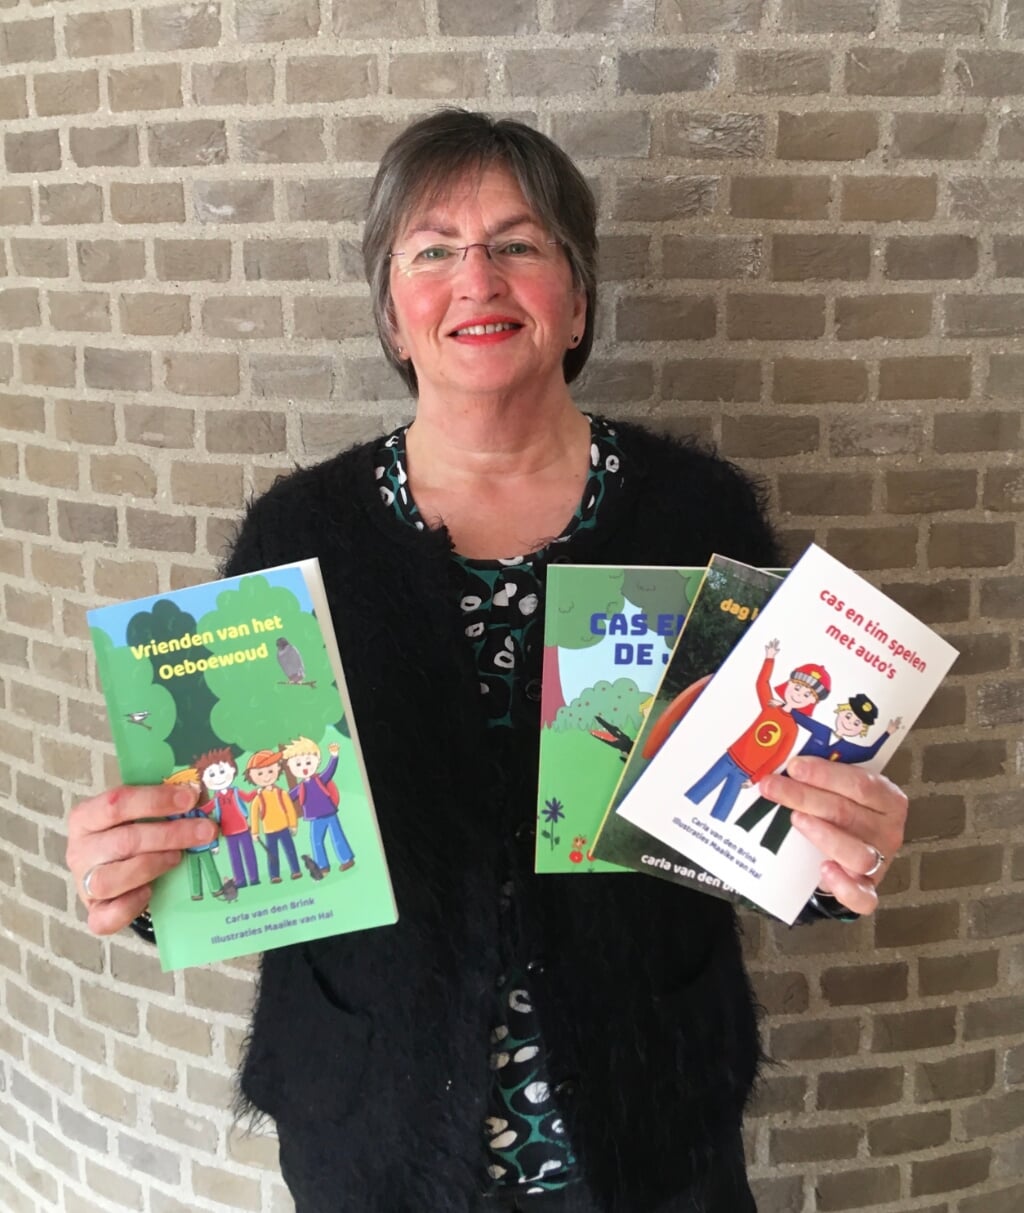 Carla van den Brink met de boeken die ze tot nu toe heeft gepubliceerd.